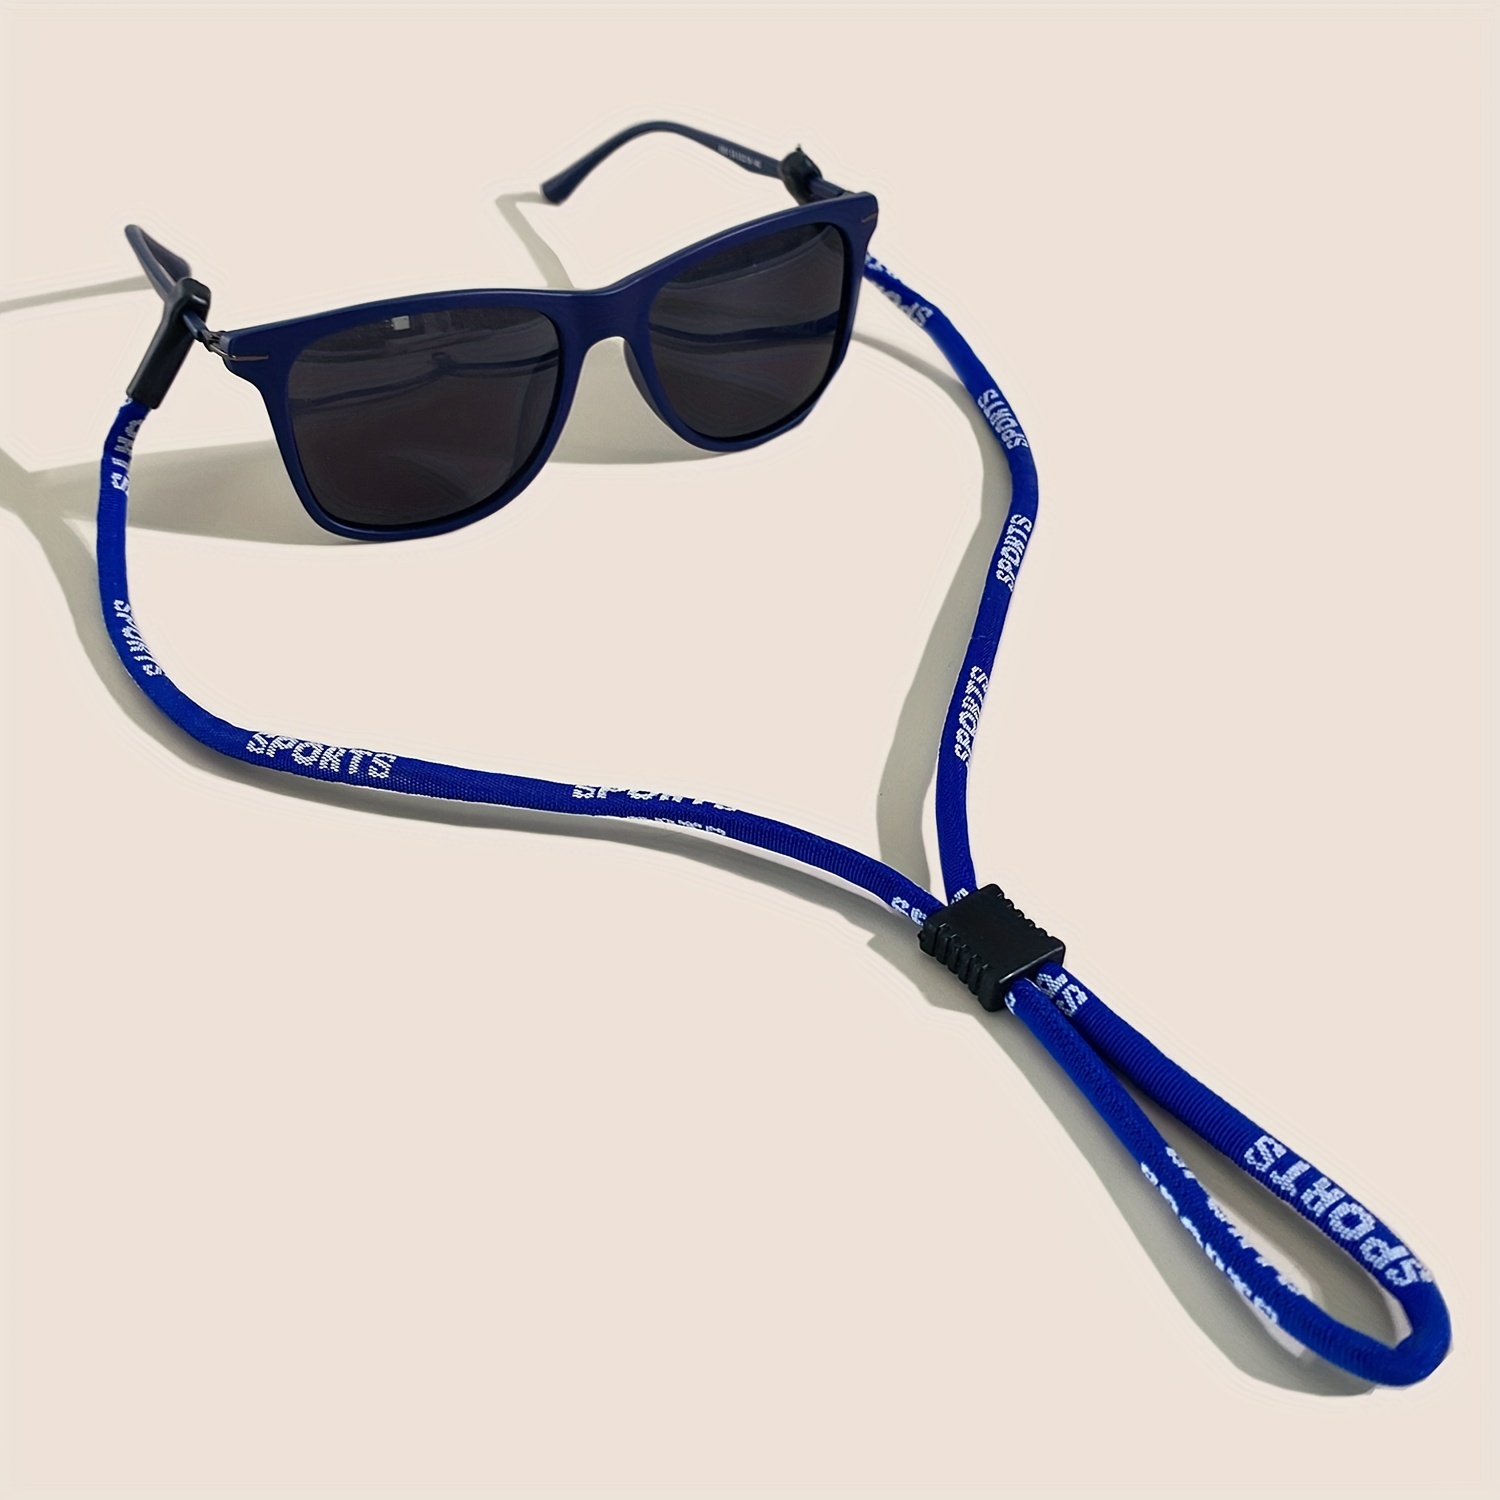 1 Stück verstellbare elastische Silikon Brillen bänder